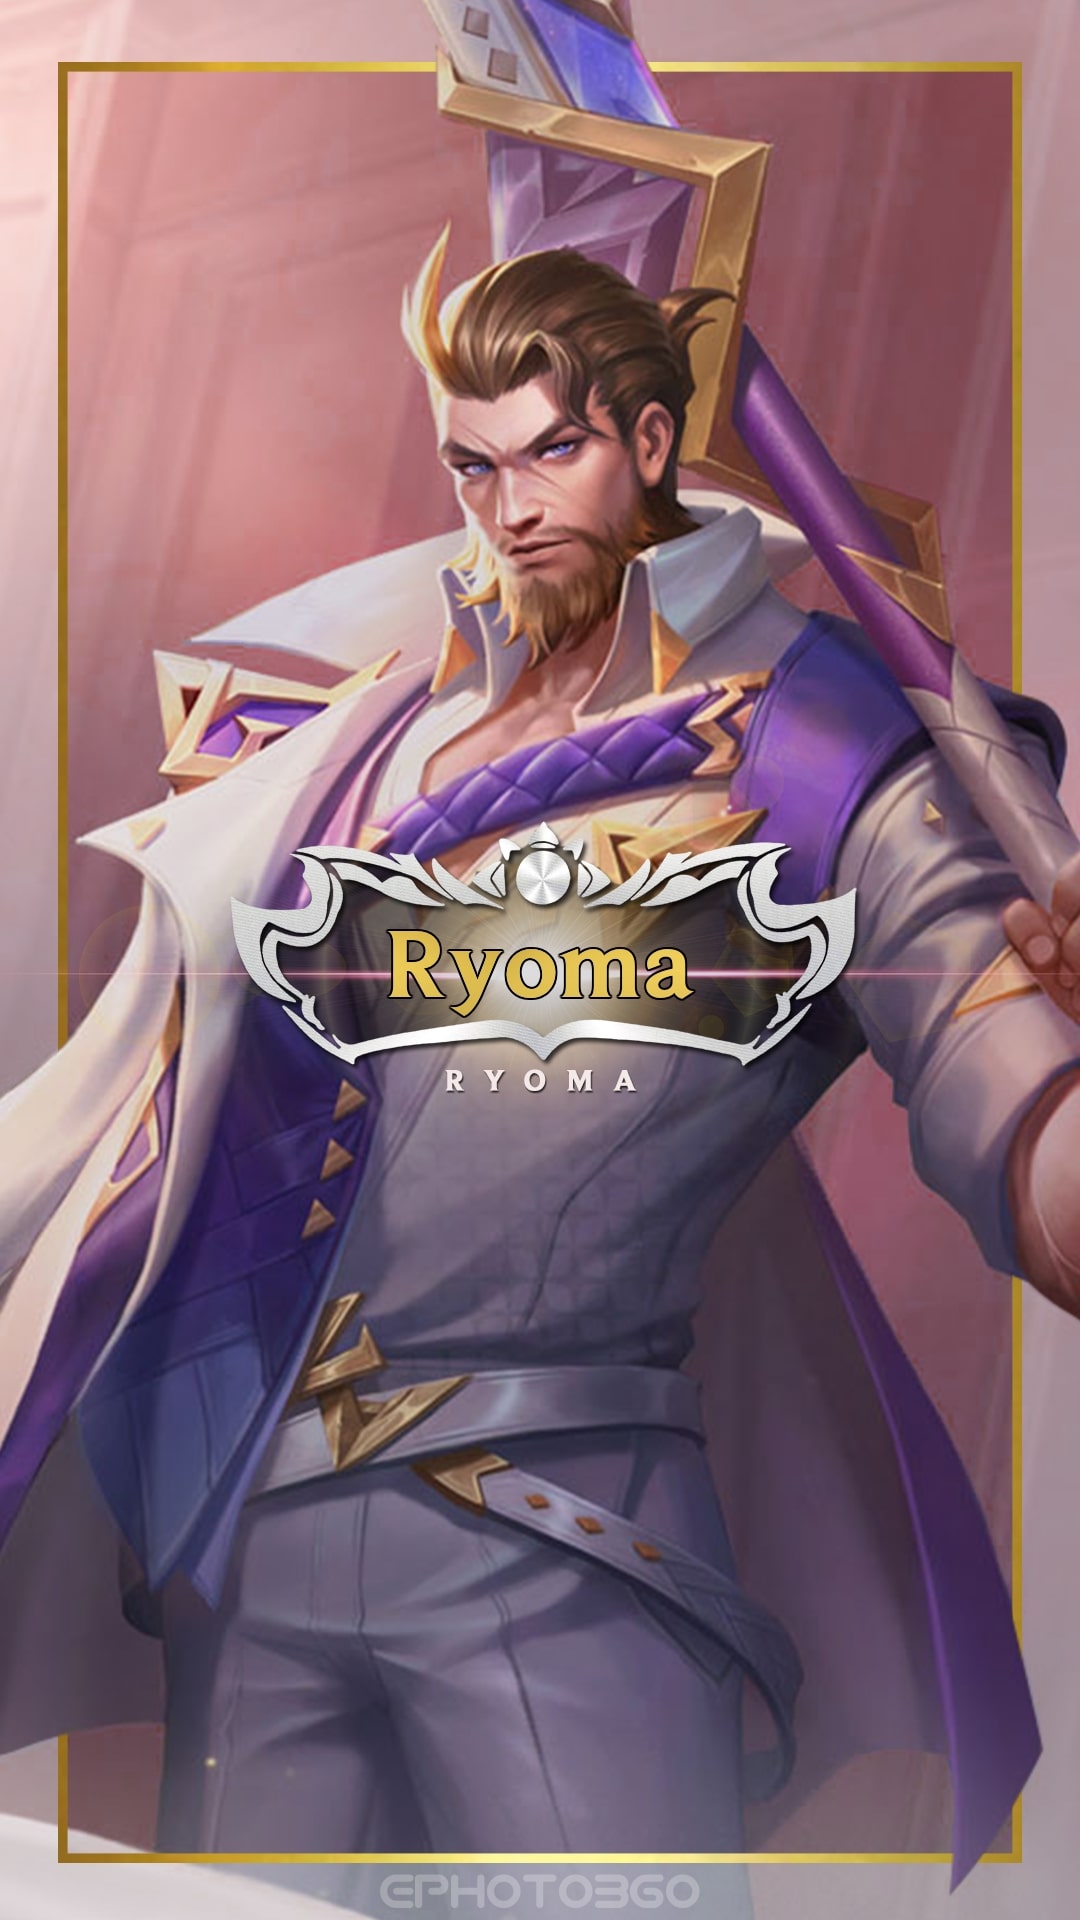 Ryoma - một trong những nhân vật được yêu thích nhất trong trò chơi Liên Quân Mobile và giờ đây đã có hình nền rực rỡ để bạn trang trí màn hình điện thoại của mình. Đừng bỏ lỡ cơ hội này!